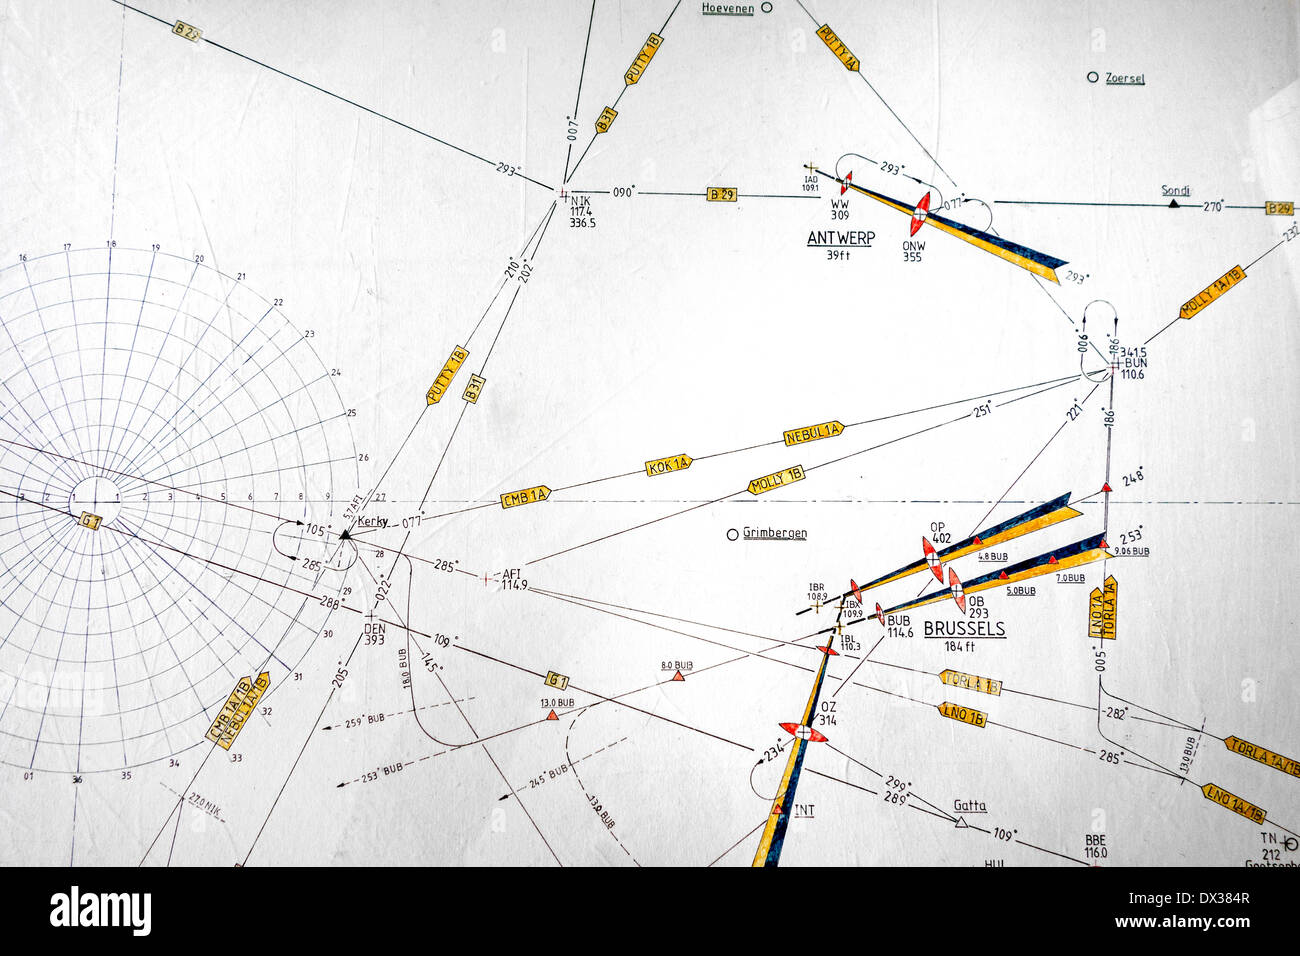 Gráfico de aeronáutica, mapa que muestra símbolos de waypoints y rutas de vuelo diseñado para ayudar en la navegación de aeronaves Foto de stock